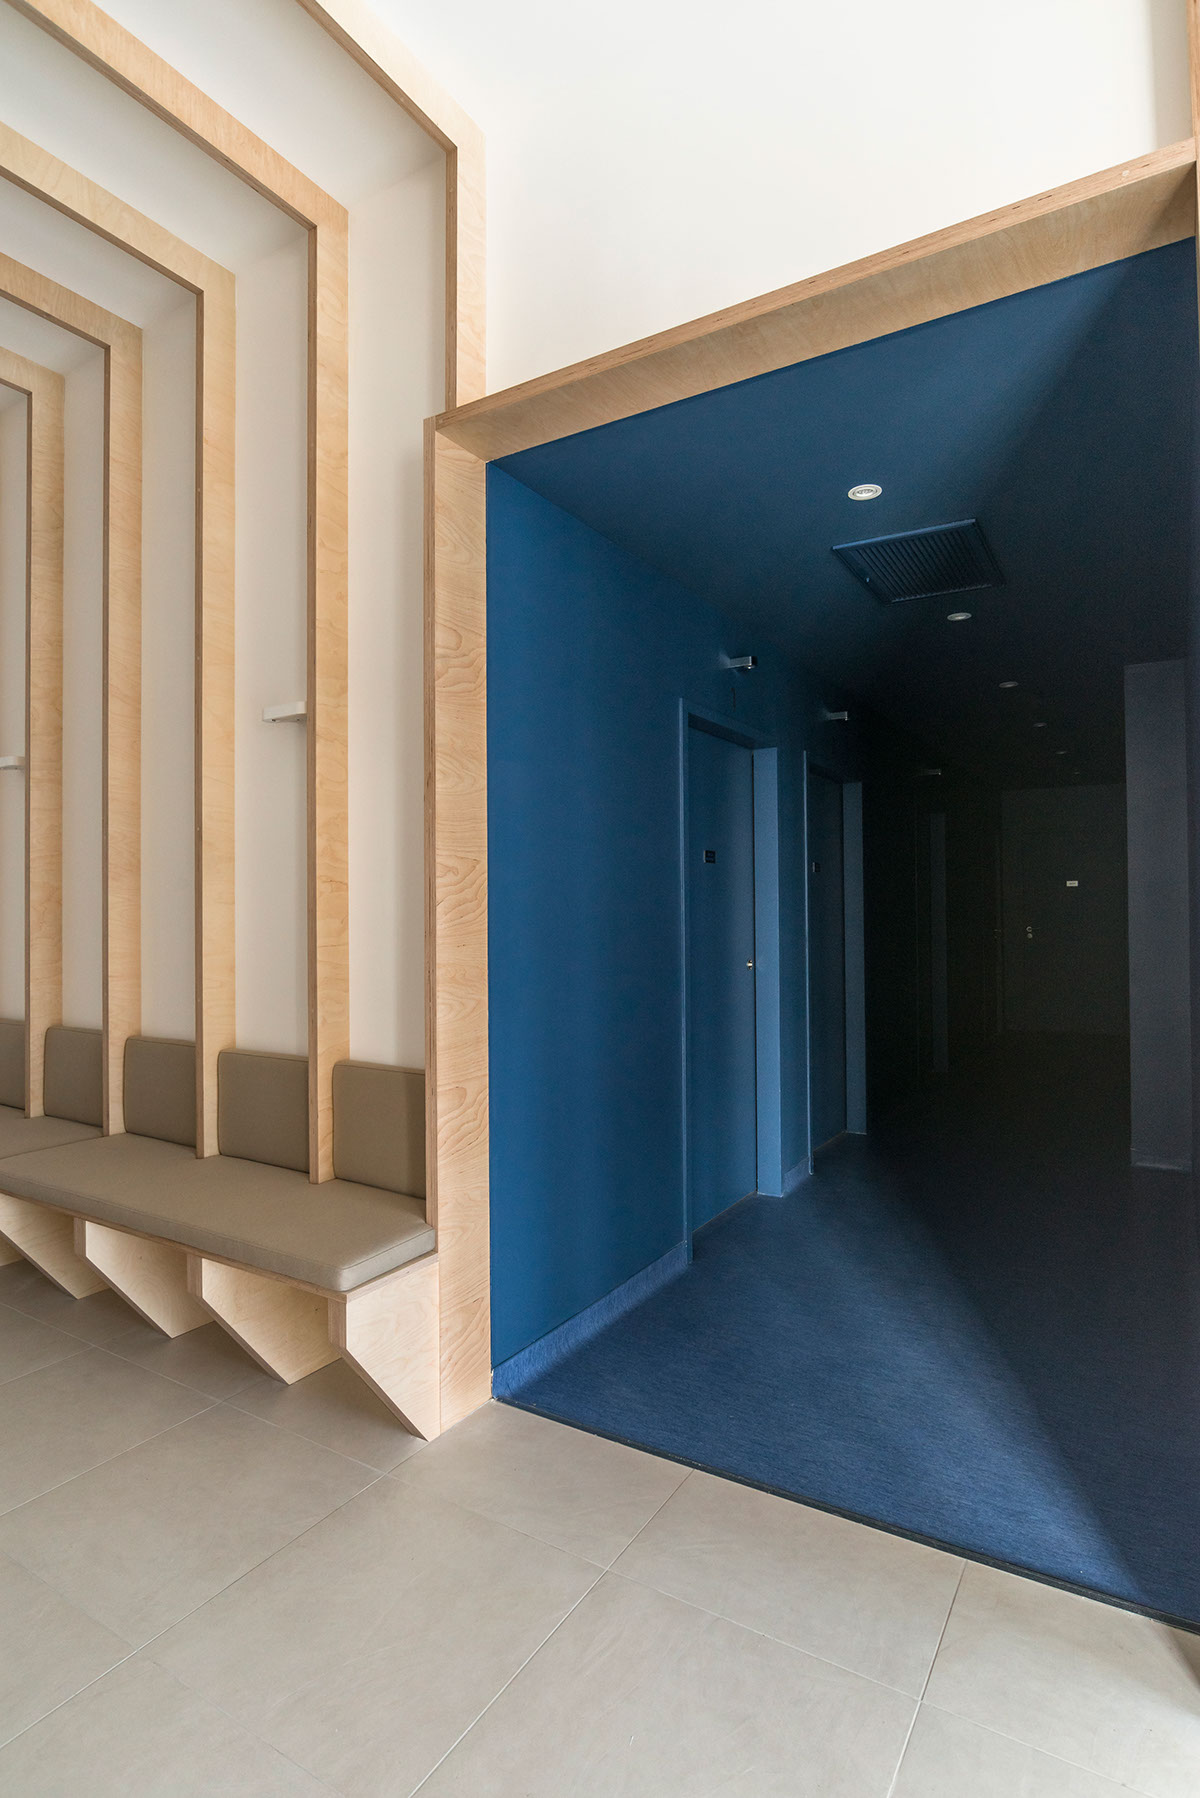 Analytical Laboratory Interior Architecture design furniture wood birch